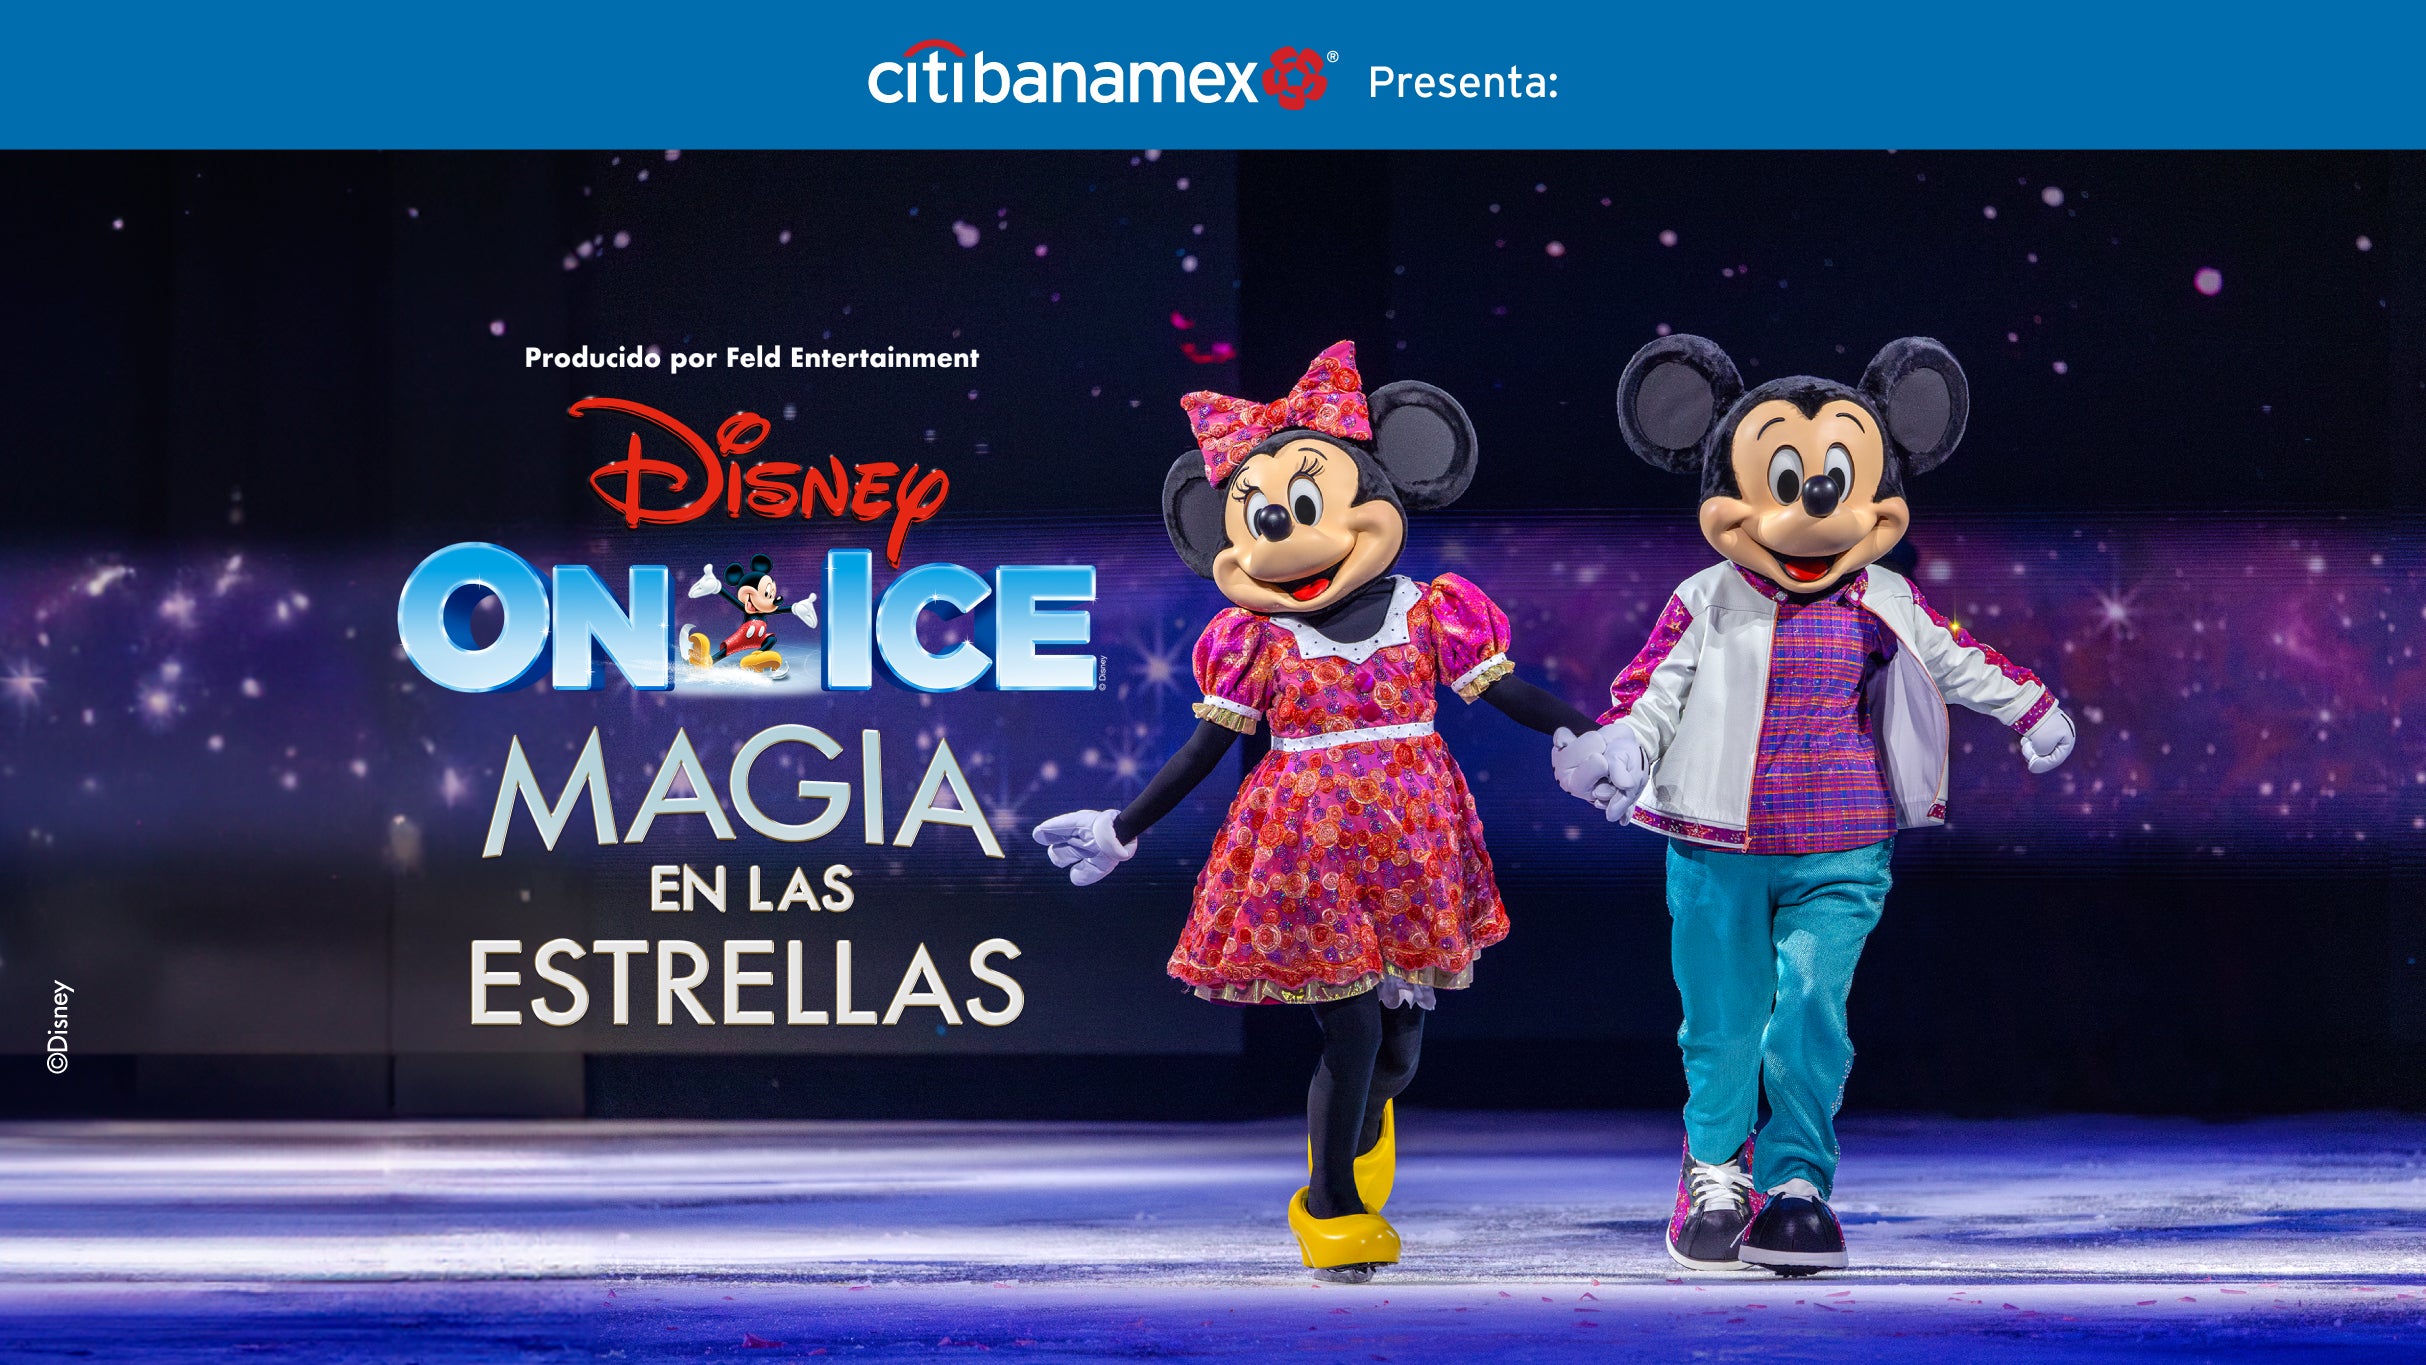 Disney On Ice "Magia en las Estrellas" in Ciudad de México promo photo for Preventa Citibanamex presale offer code